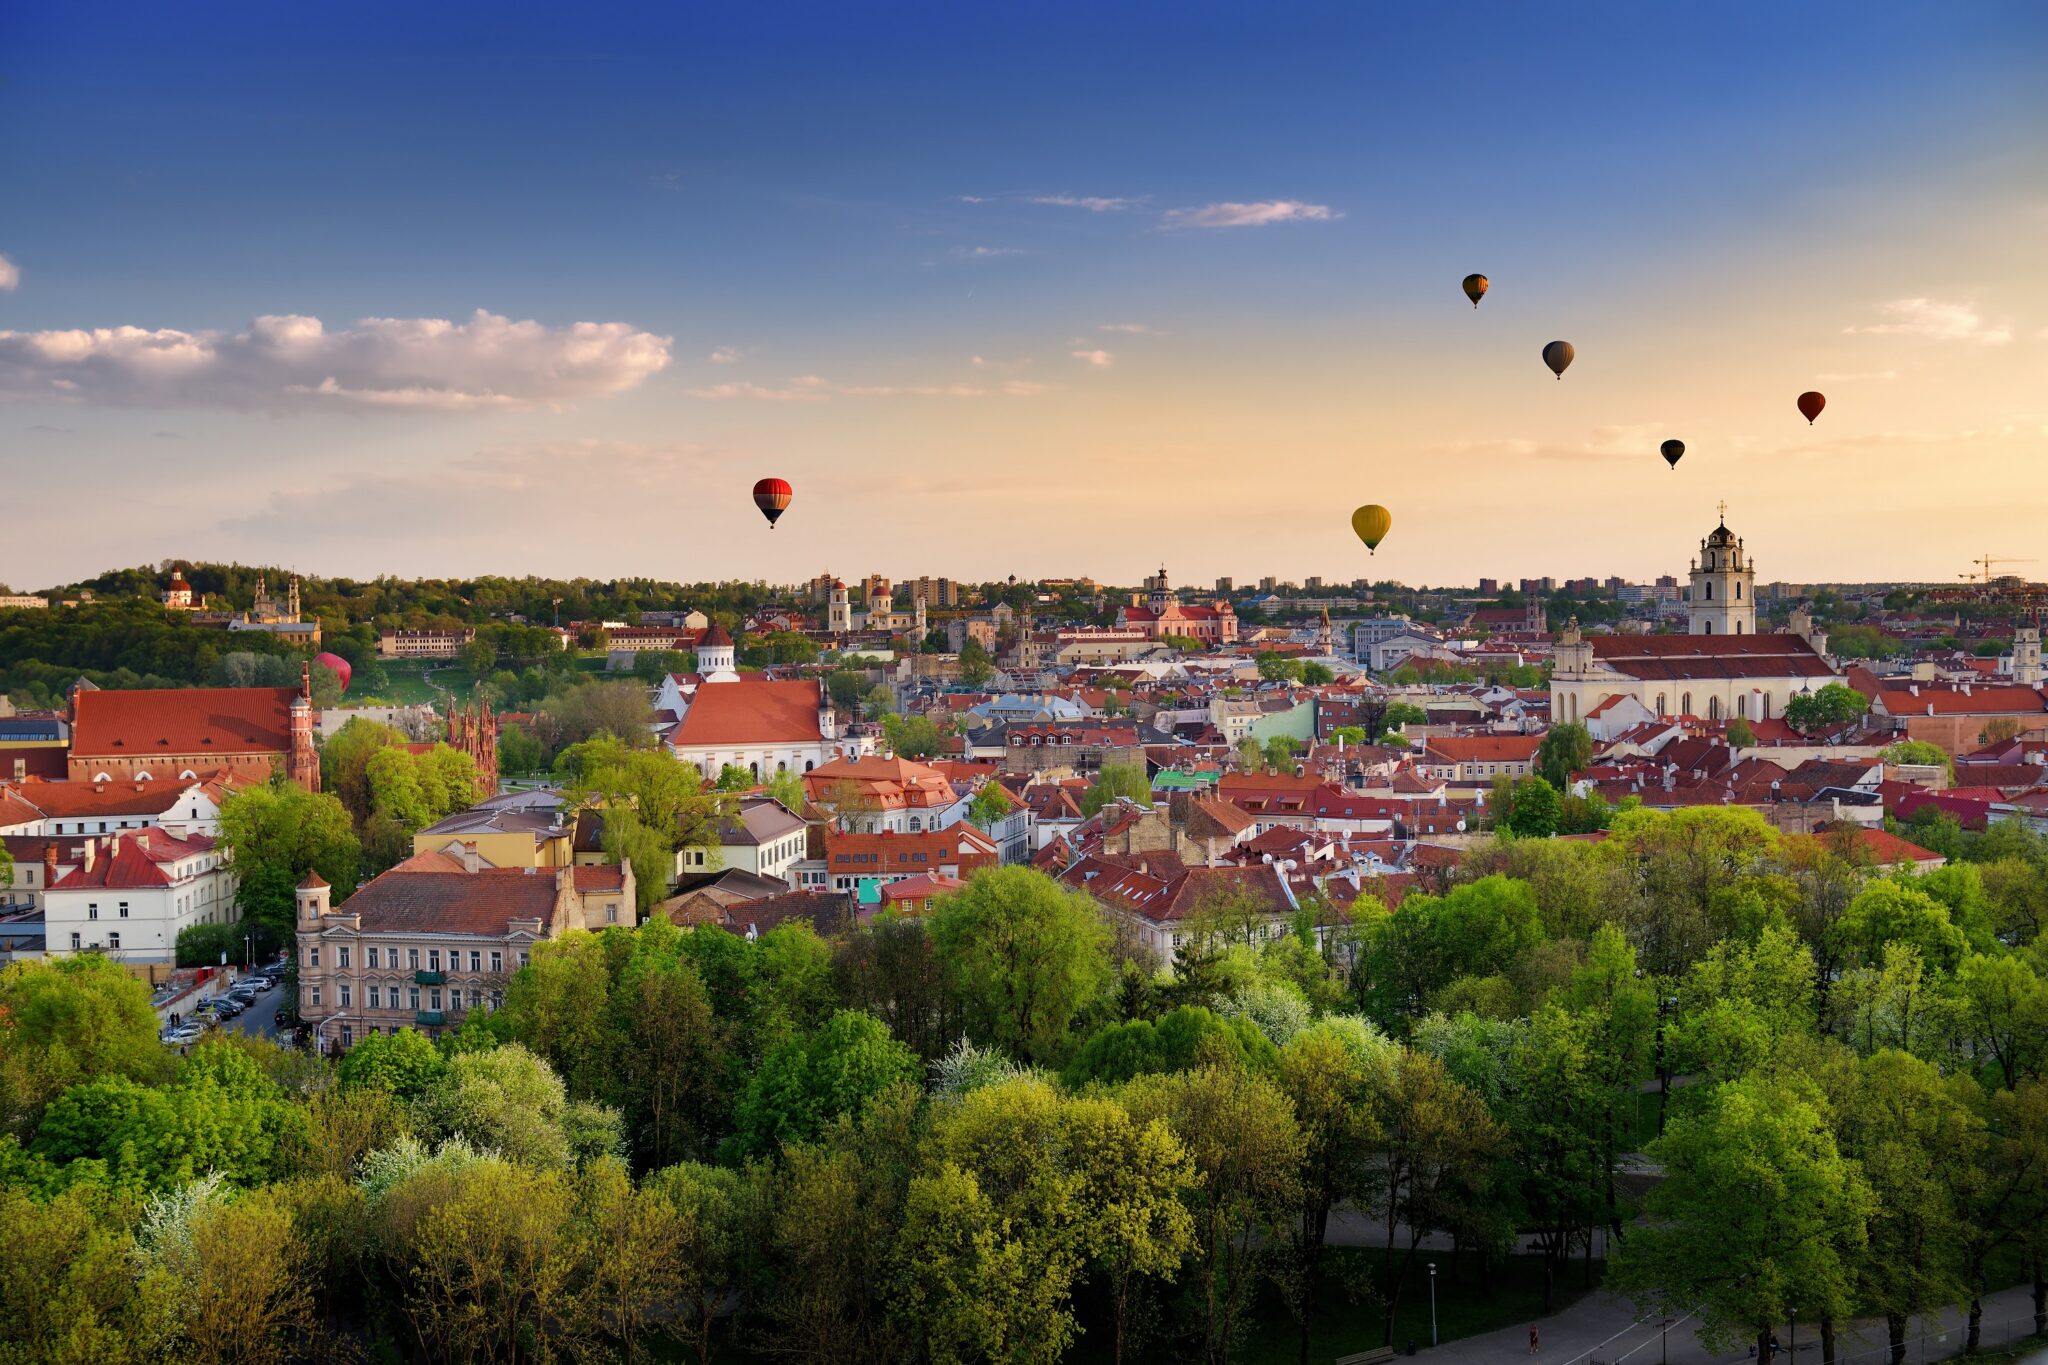 Βίλνιους: Aνακαλύπτοντας την παλαιότερη μεσαιωνική πόλη που έχει διασωθεί  έως τις μέρες μας | travel.gr